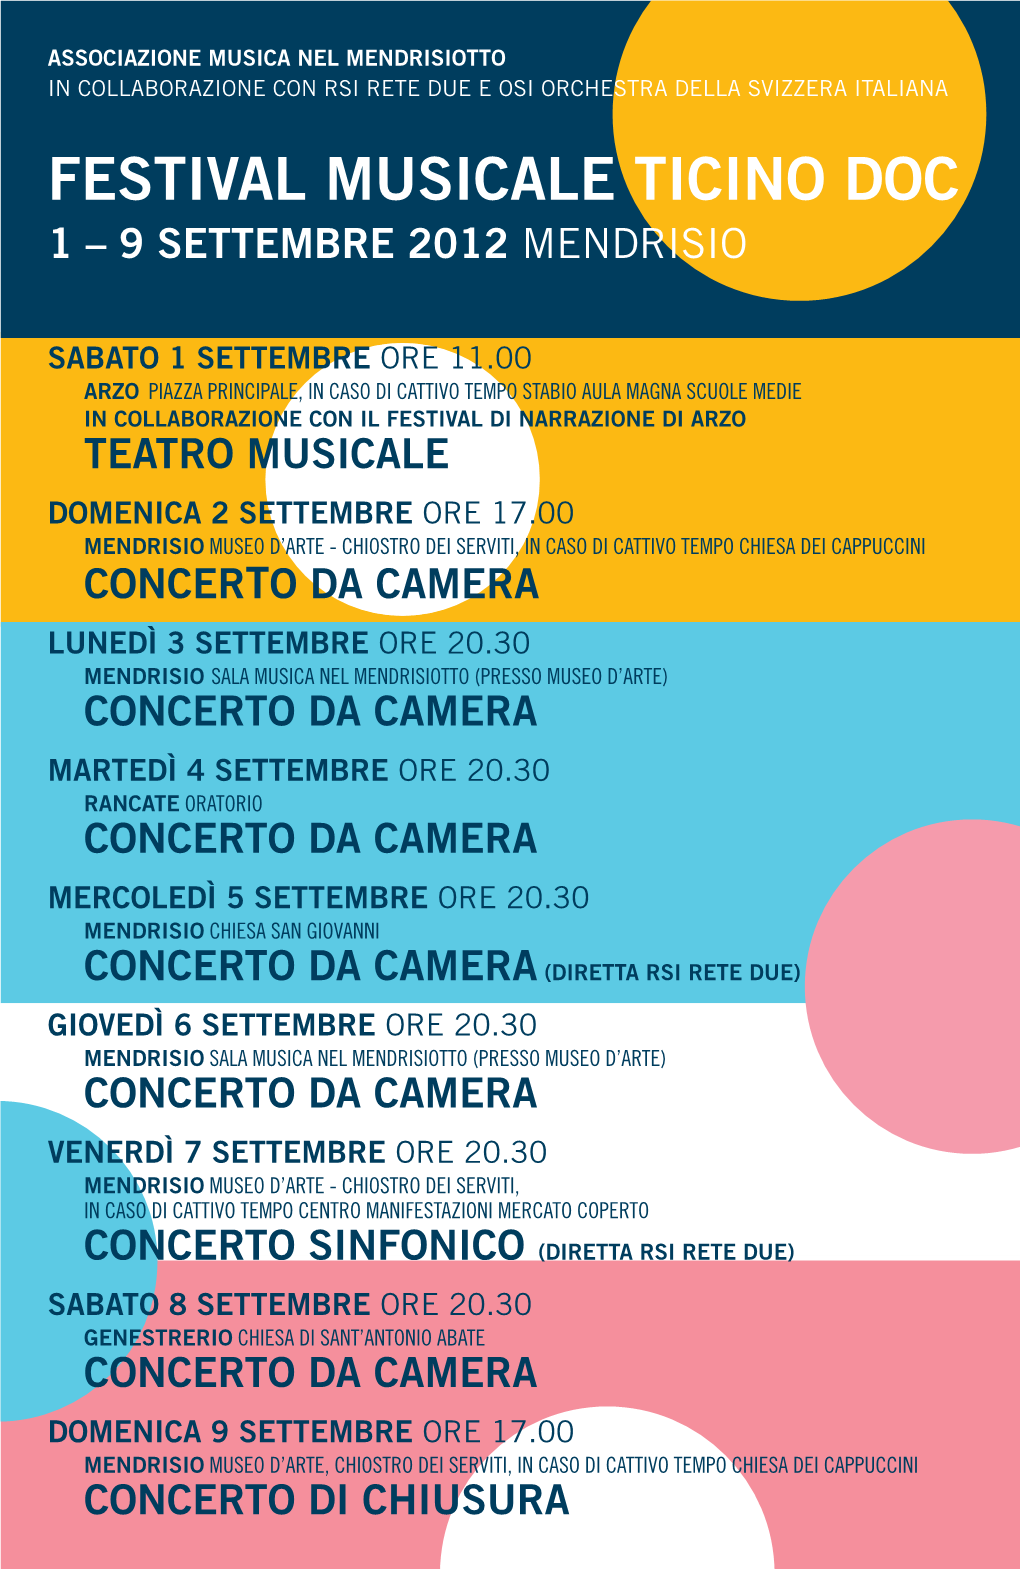 Festival Musicale Ticino Doc 1 – 9 Settembre 2012 Mendrisio